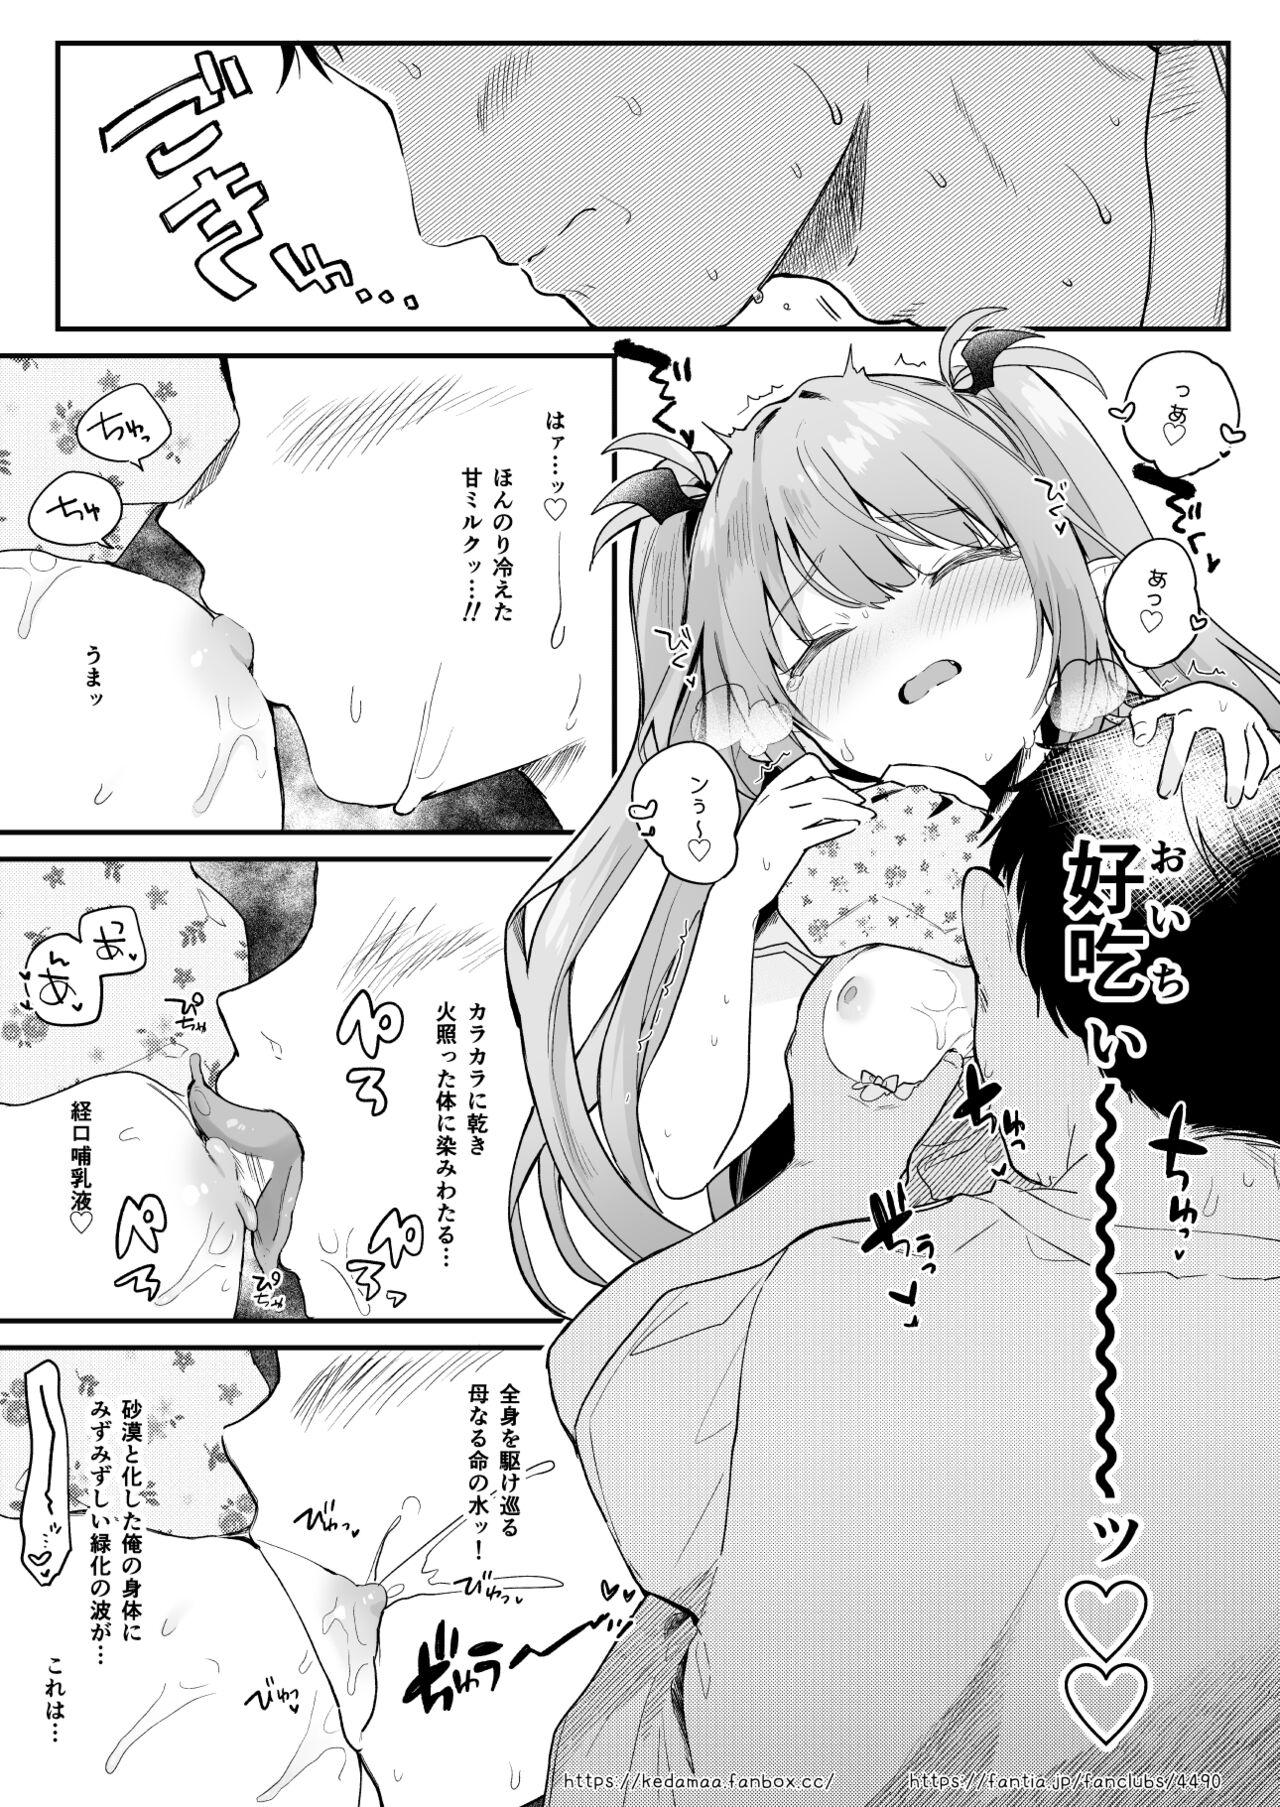 Air Con Kowareta Hi Rurumu-san to Asedaku Sex suru Manga 9